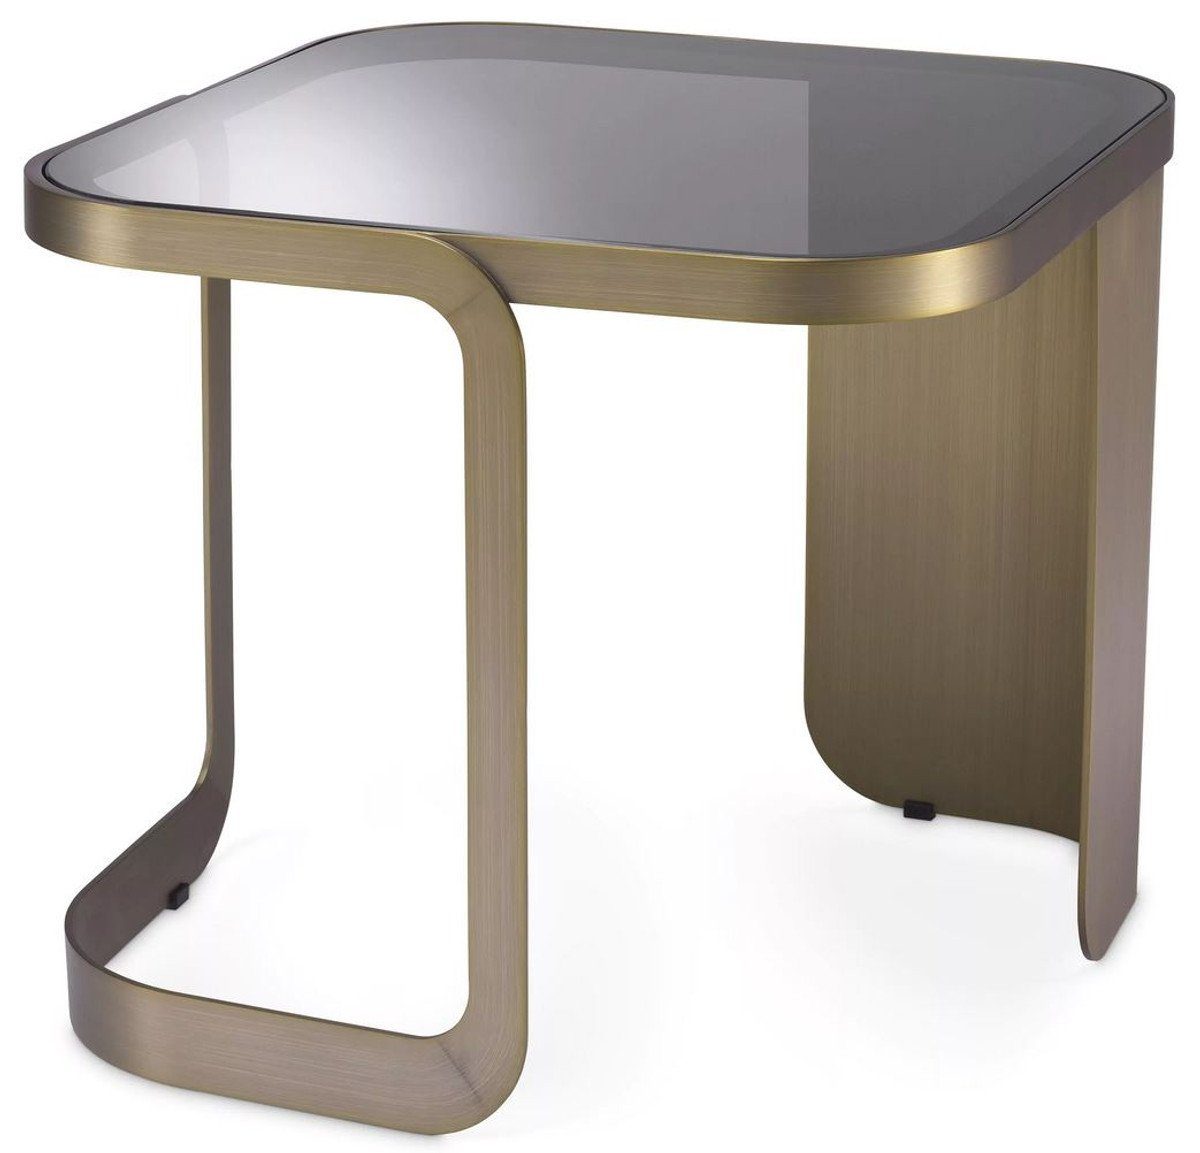 Casa Padrino Beistelltisch Luxus Beistelltisch Messingfarben / Grau 49,5 x 49,5 x H. 45 cm - Edelstahl Tisch mit Glasplatte - Möbel - Luxus Kollektion | Ablagetische